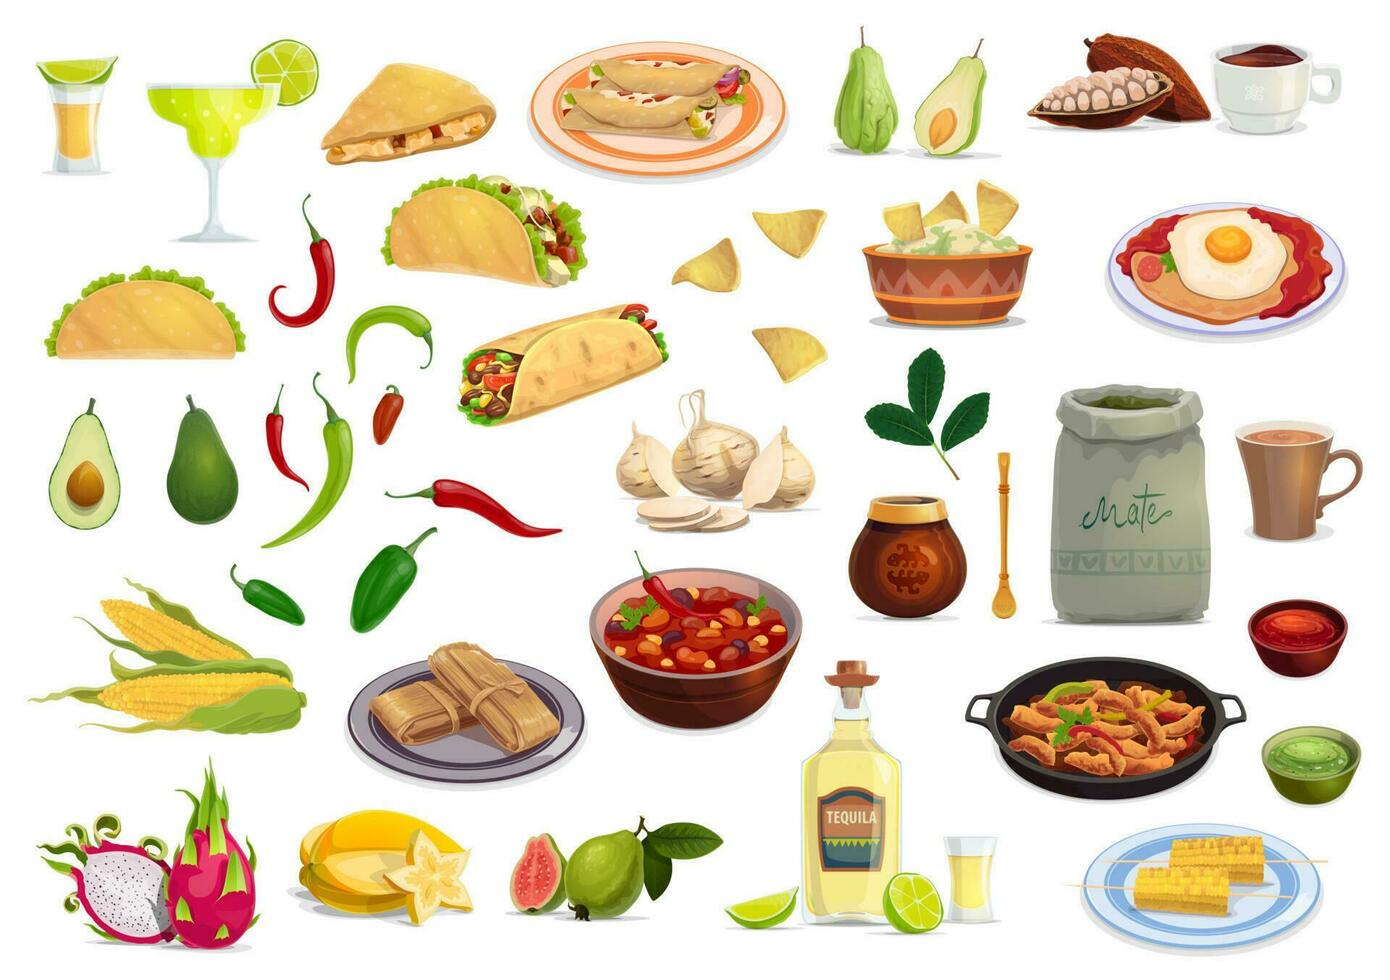 Mexikaner Küche Essen und trinken Karikatur einstellen vektor